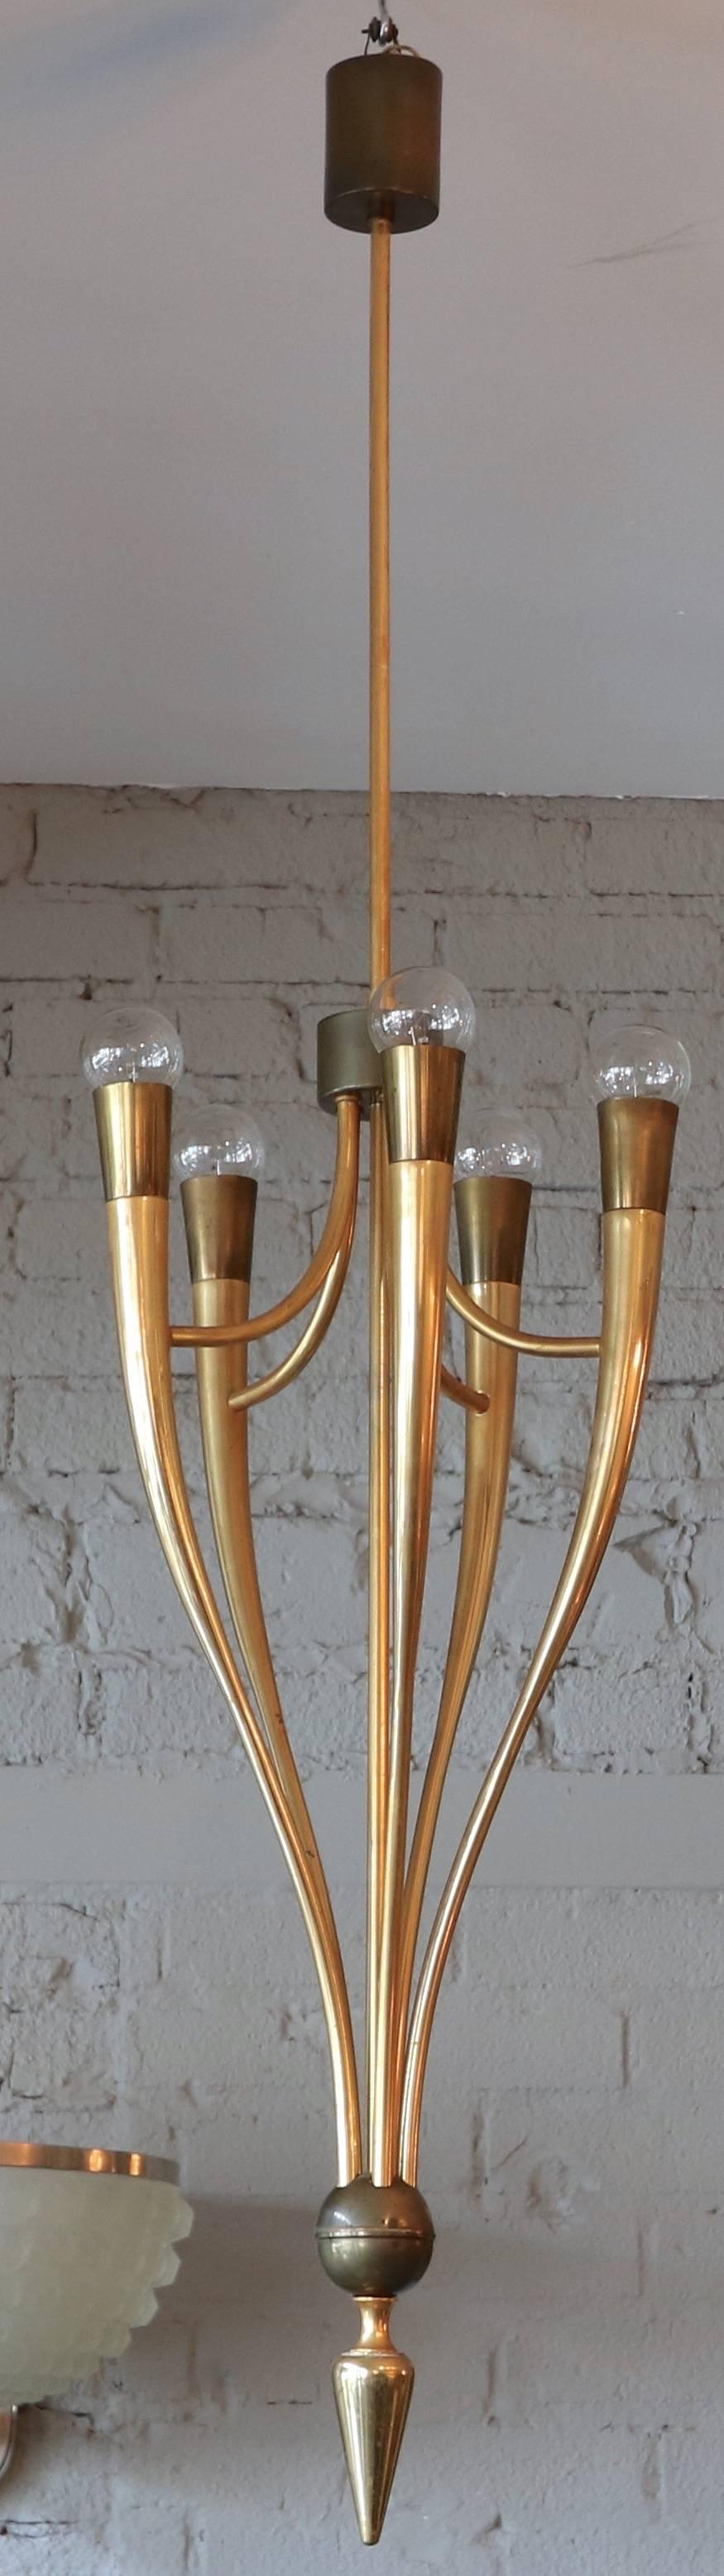 Italian 1940s Brass Pendant Chandelier by Guglielmo Ulrich For Sale